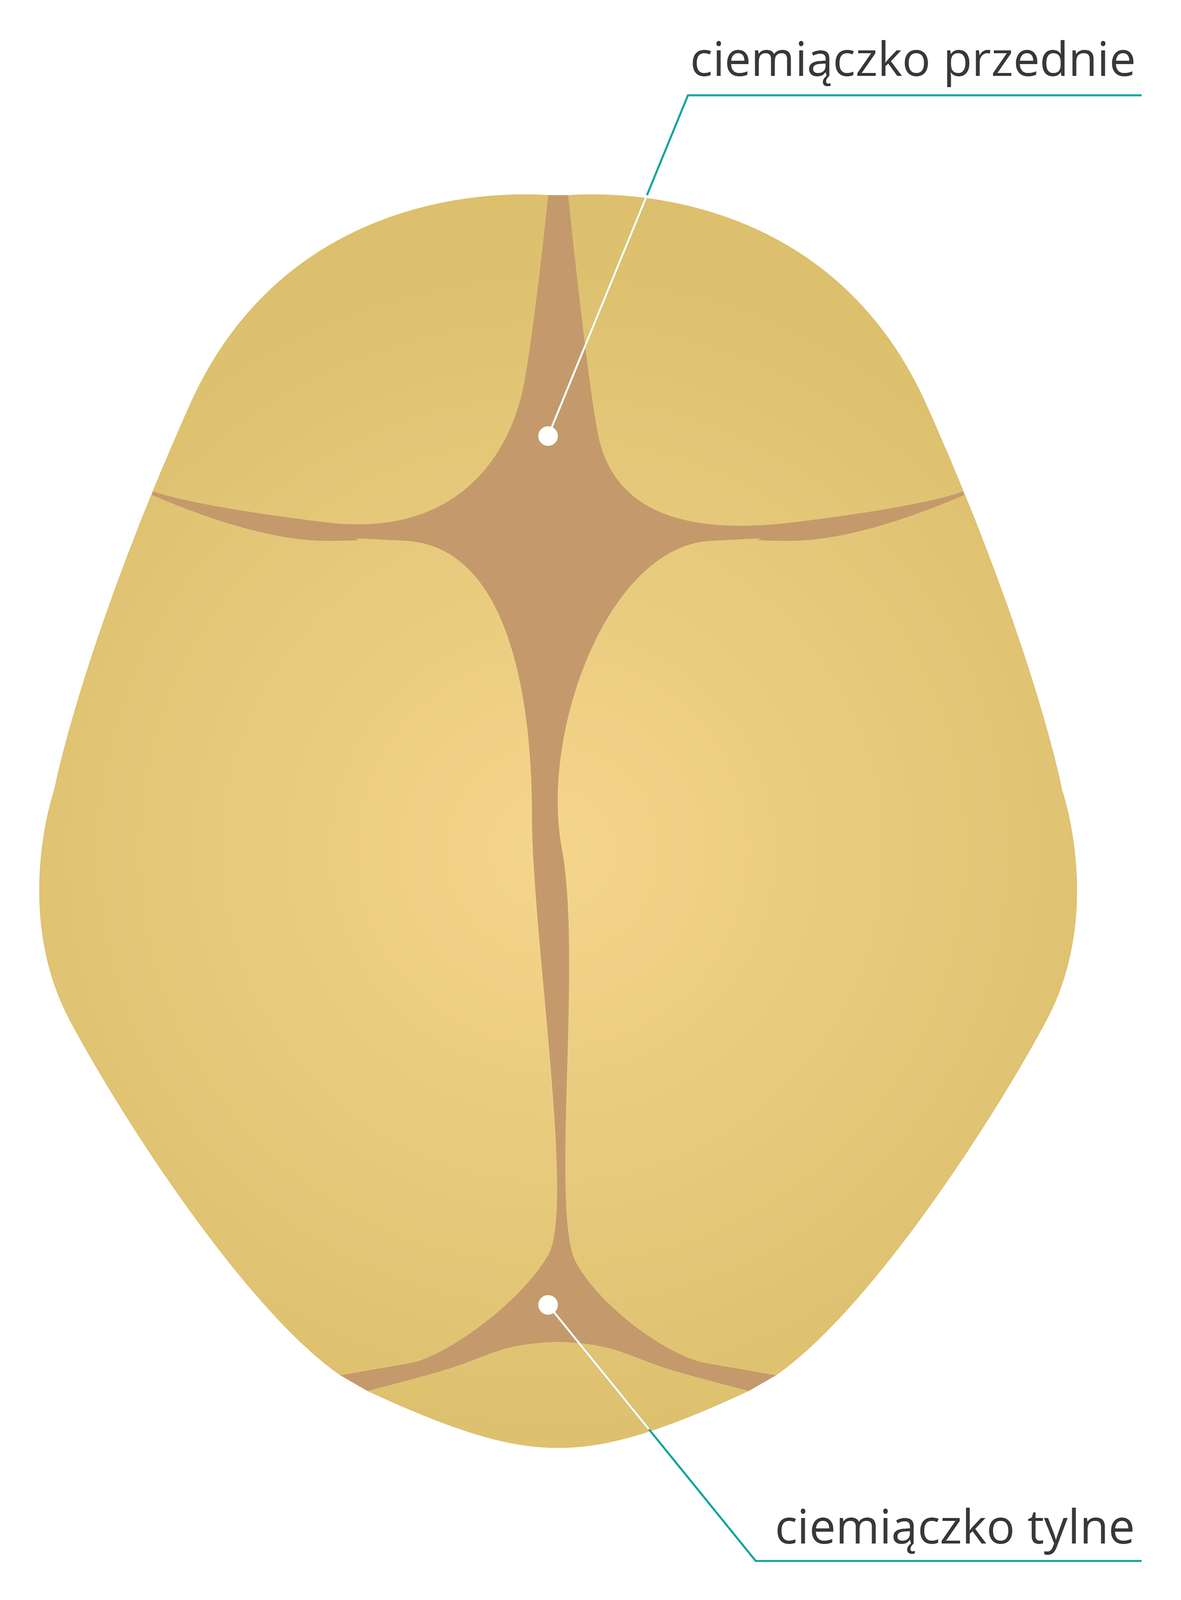 Ilustracja przedstawia brązową czaszkę noworodka z góry. Płyty kostne stykają się ze sobą, a między nimi ciemno zaznaczona błona, ciemiączko. U góry rombowate duże ciemiączko przednie, u dołu mniejsze trójkątne ciemiączko tylne.